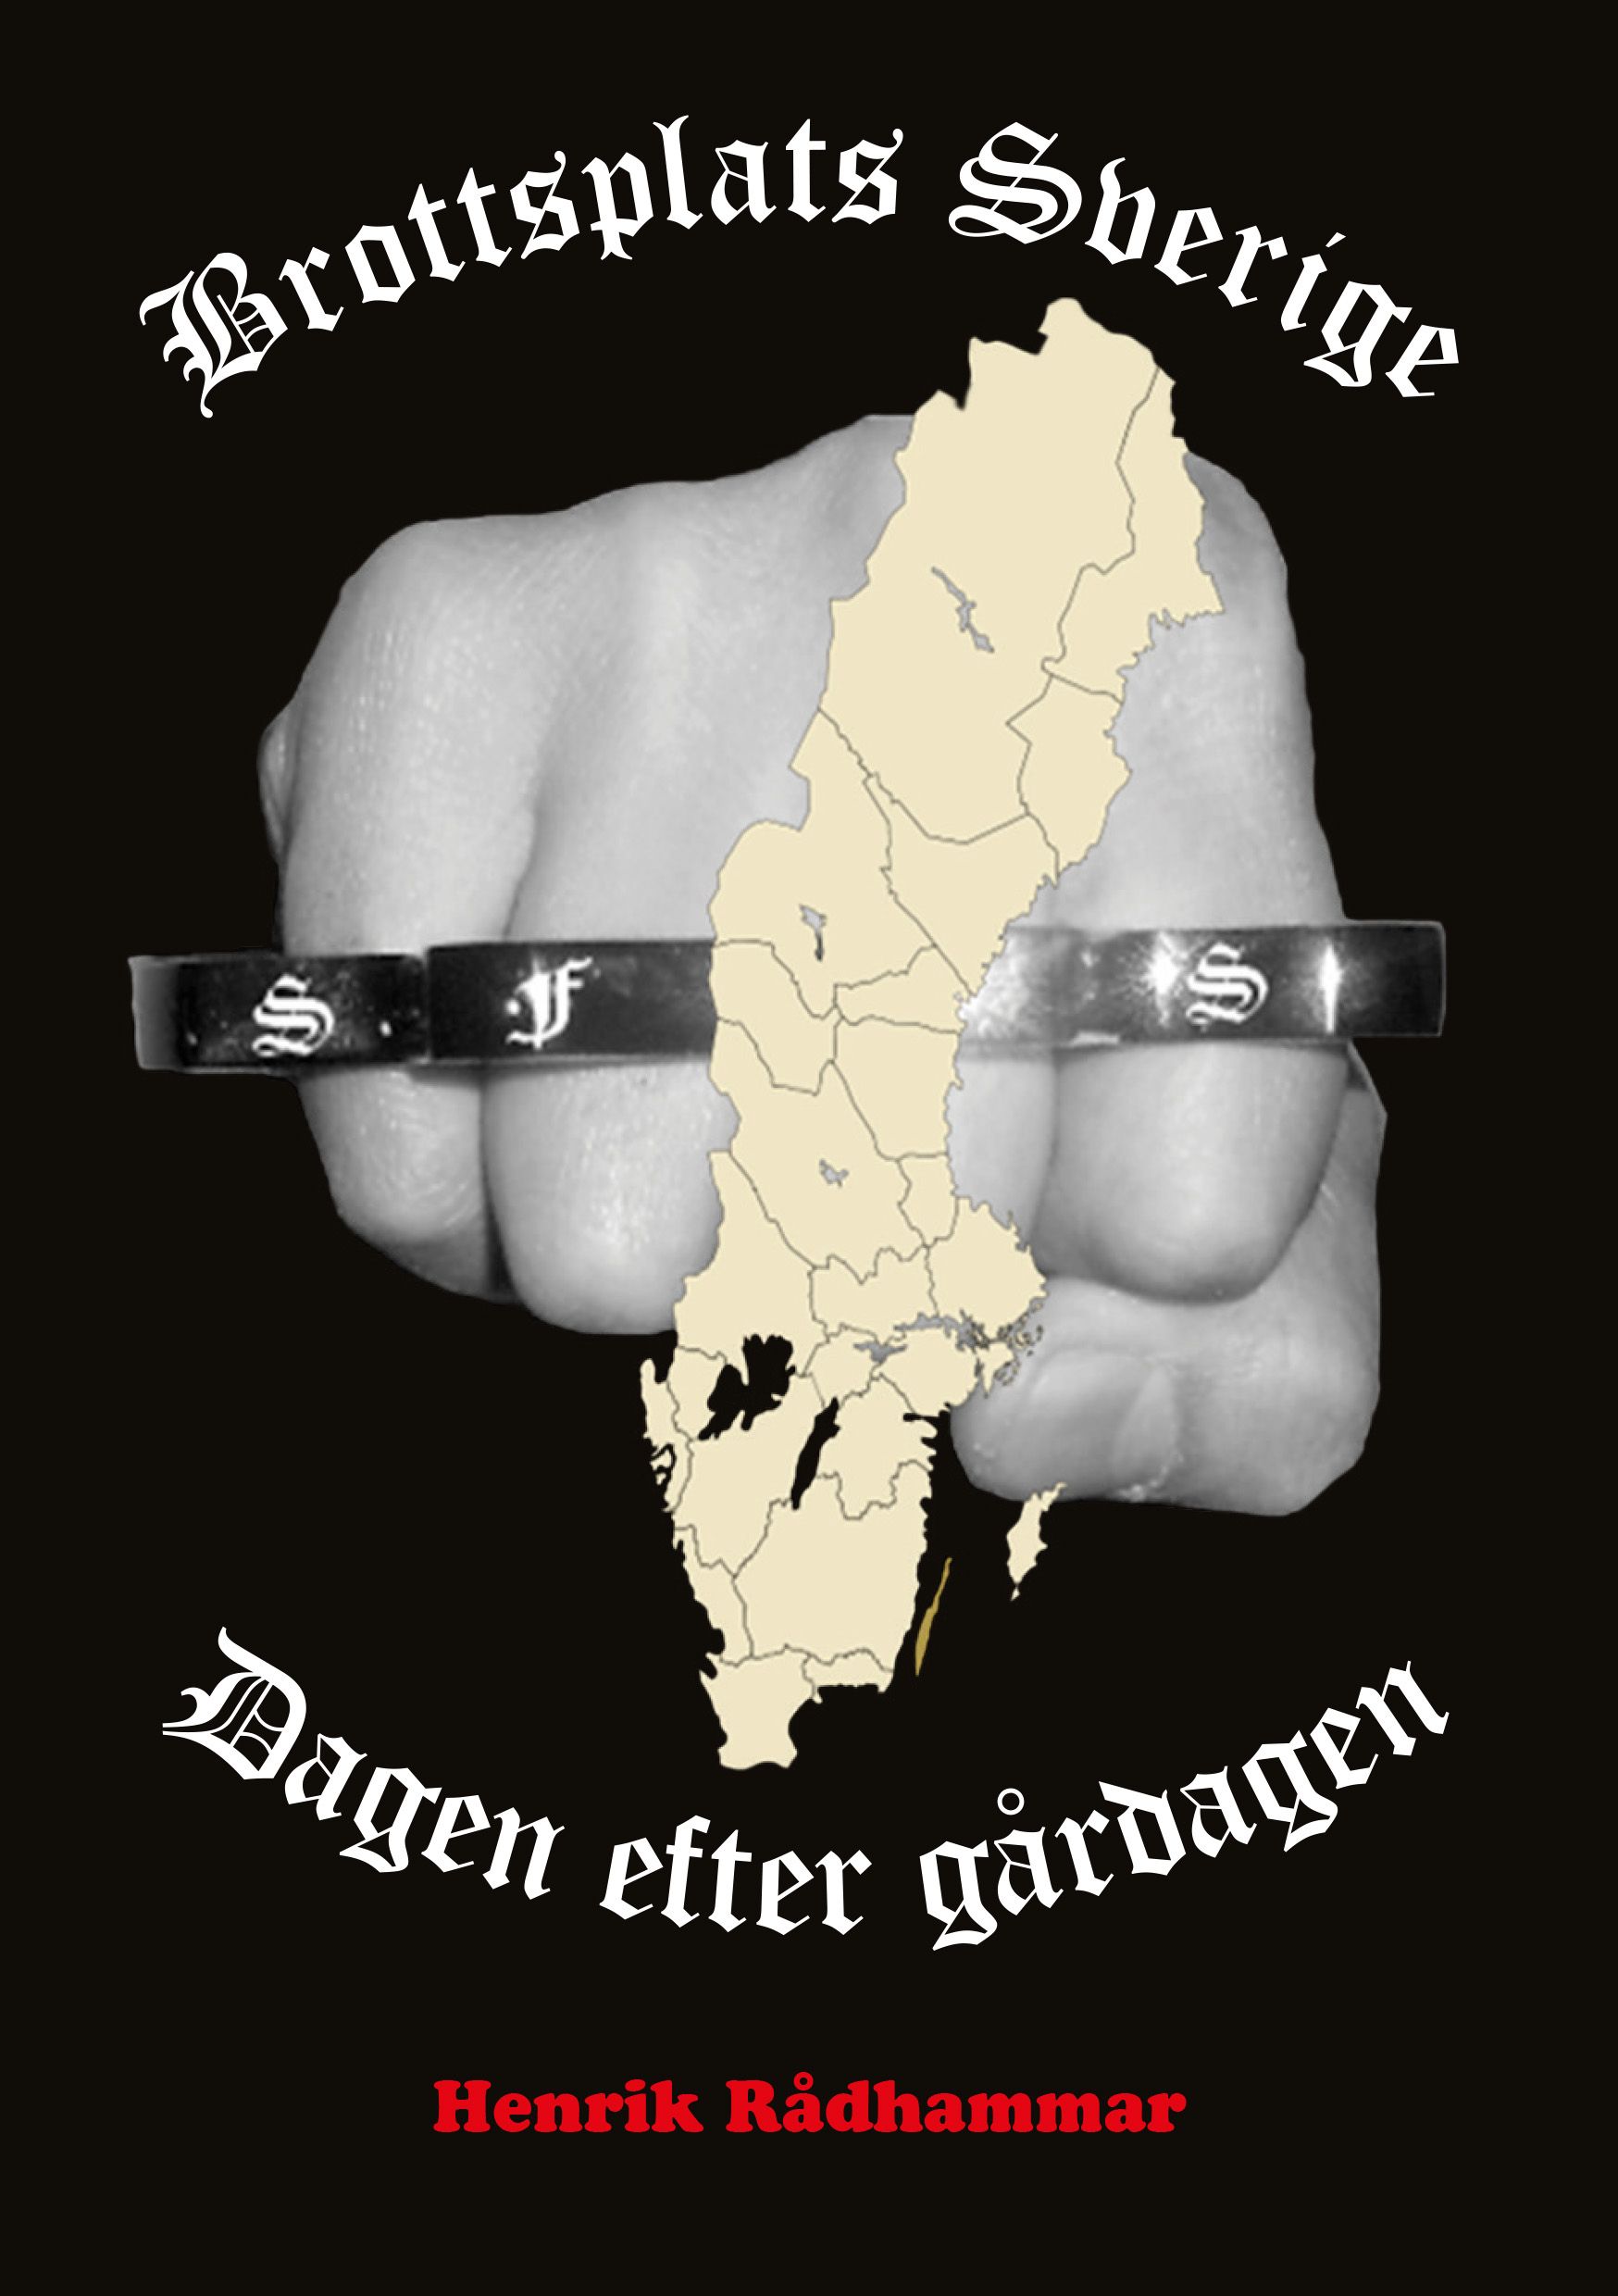 Brottsplats Sverige - Dagen efter gårdagen, eBook by Henrik Rådhammar